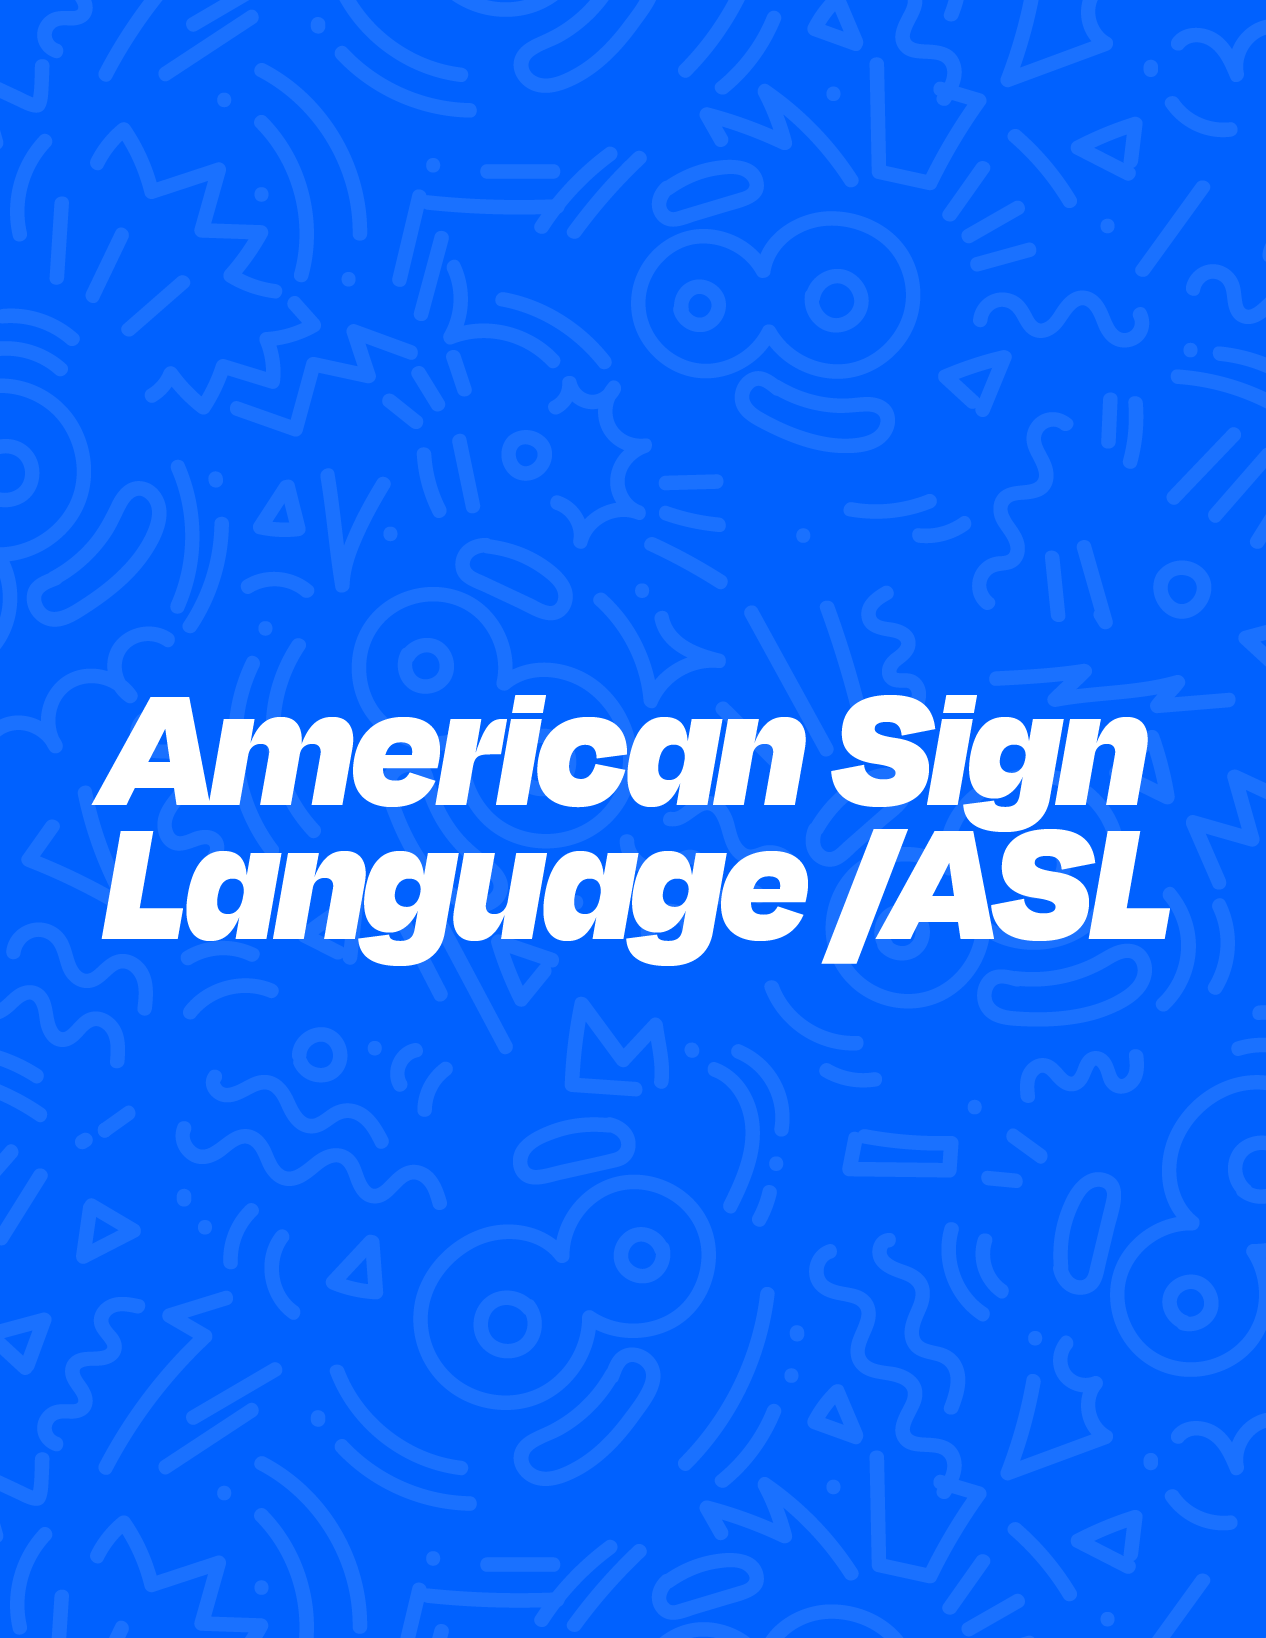 American Sign Language / ASL